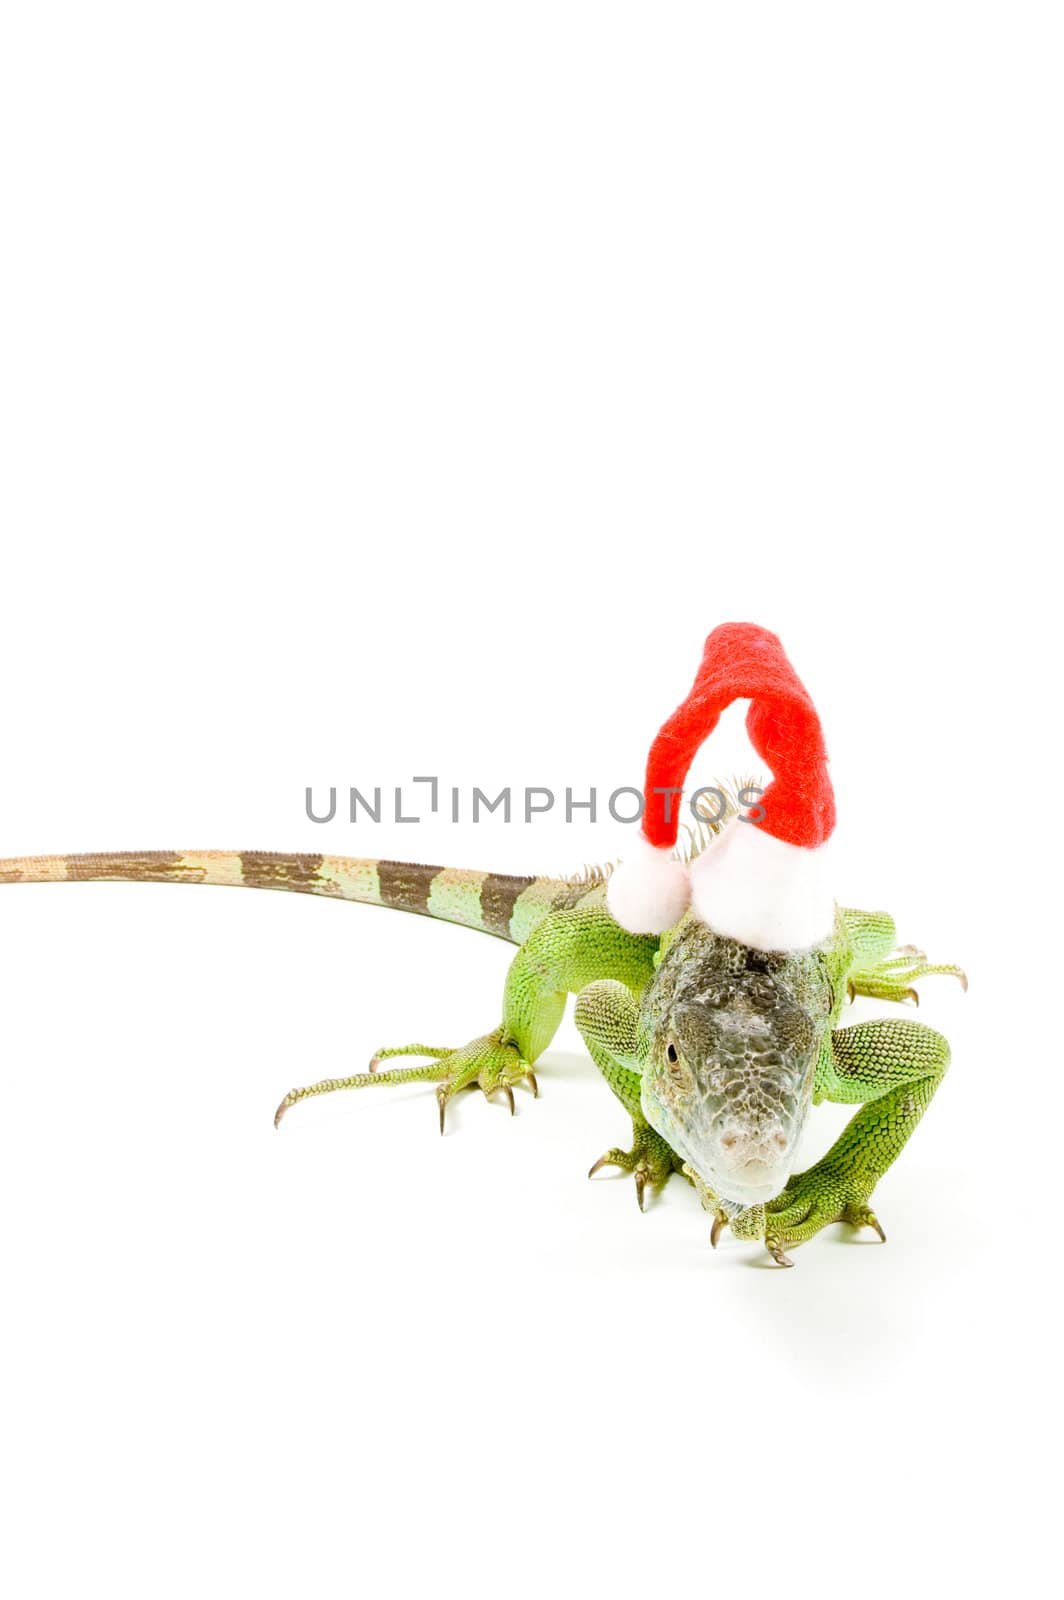 iguana wearing christmas hat  isolated on a white background